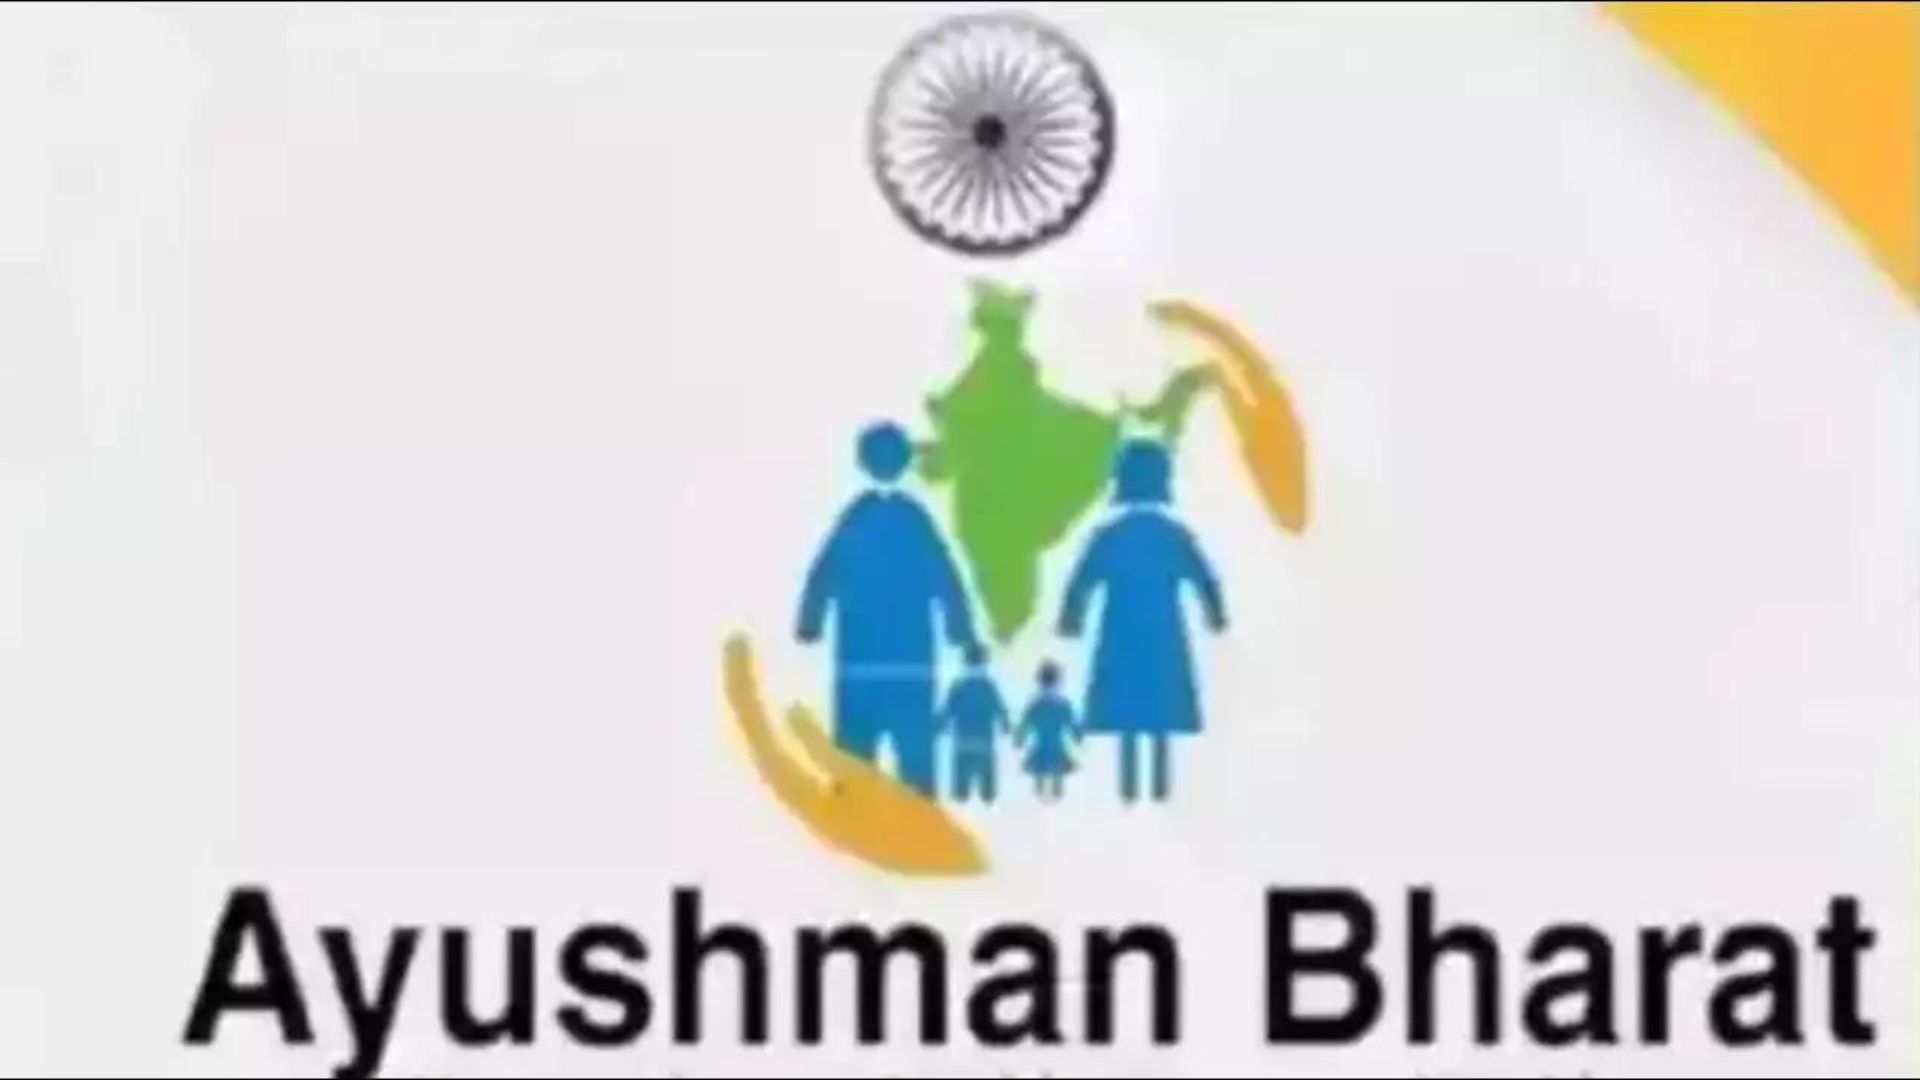 Uttar Pradesh Achieves Milestone With One Crore Ayushman Bharat Health Account Tokens